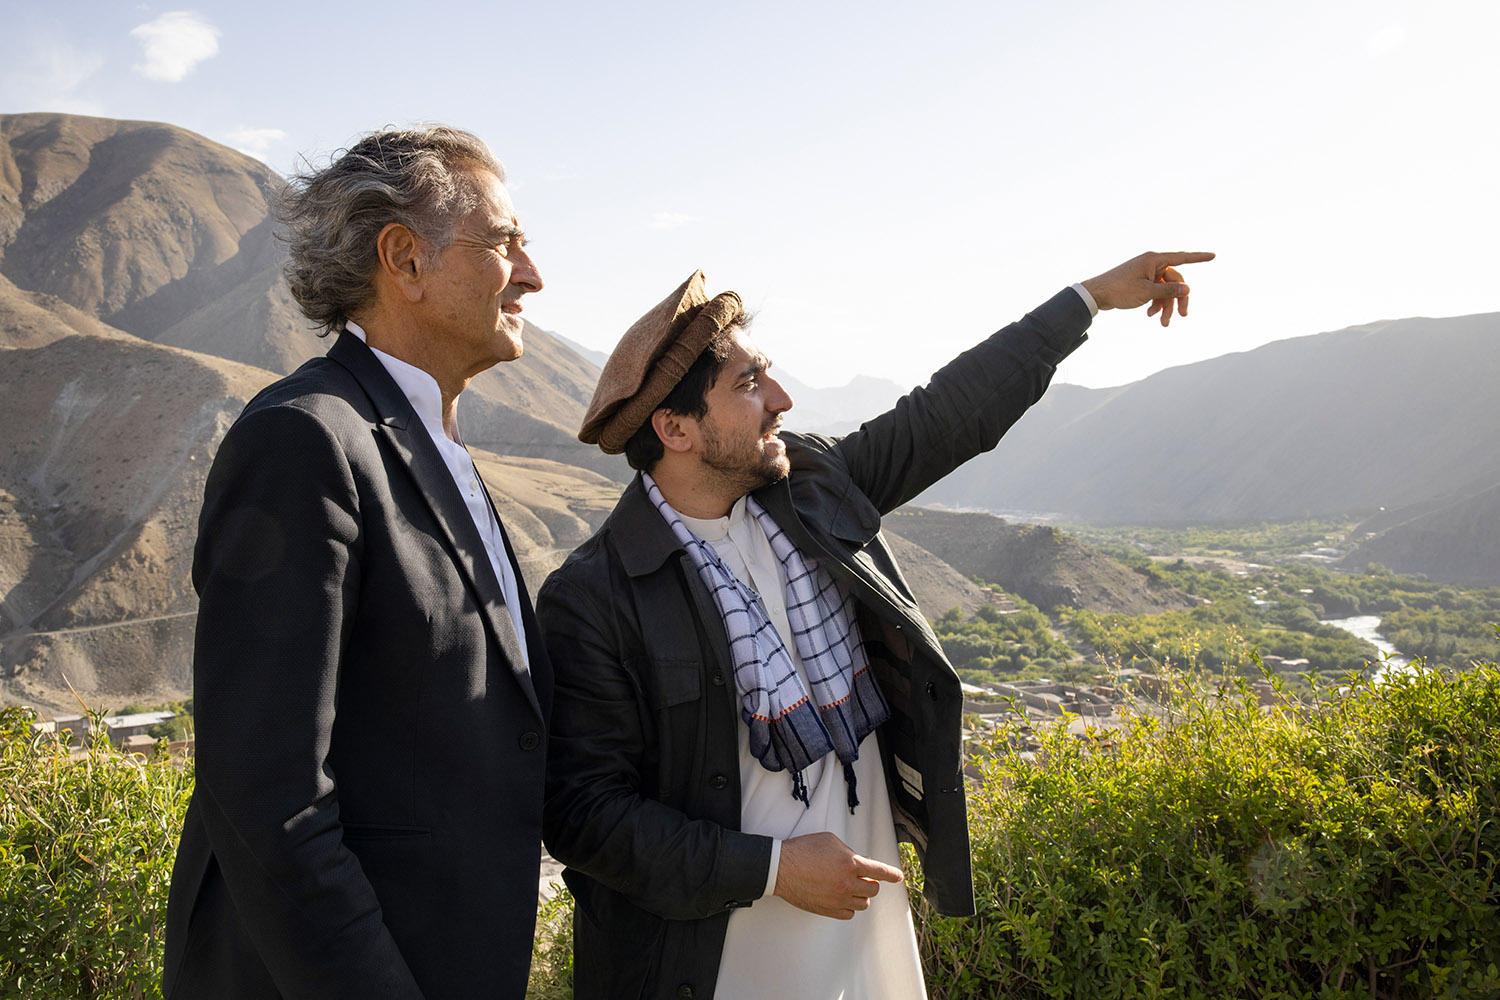 Bernard-Henri Lévy et Ahmad Massoud, au milieu des montagnes, Ahmad Massoud désigne quelque chose avec son doigt à Bernard-Henri Lévy.